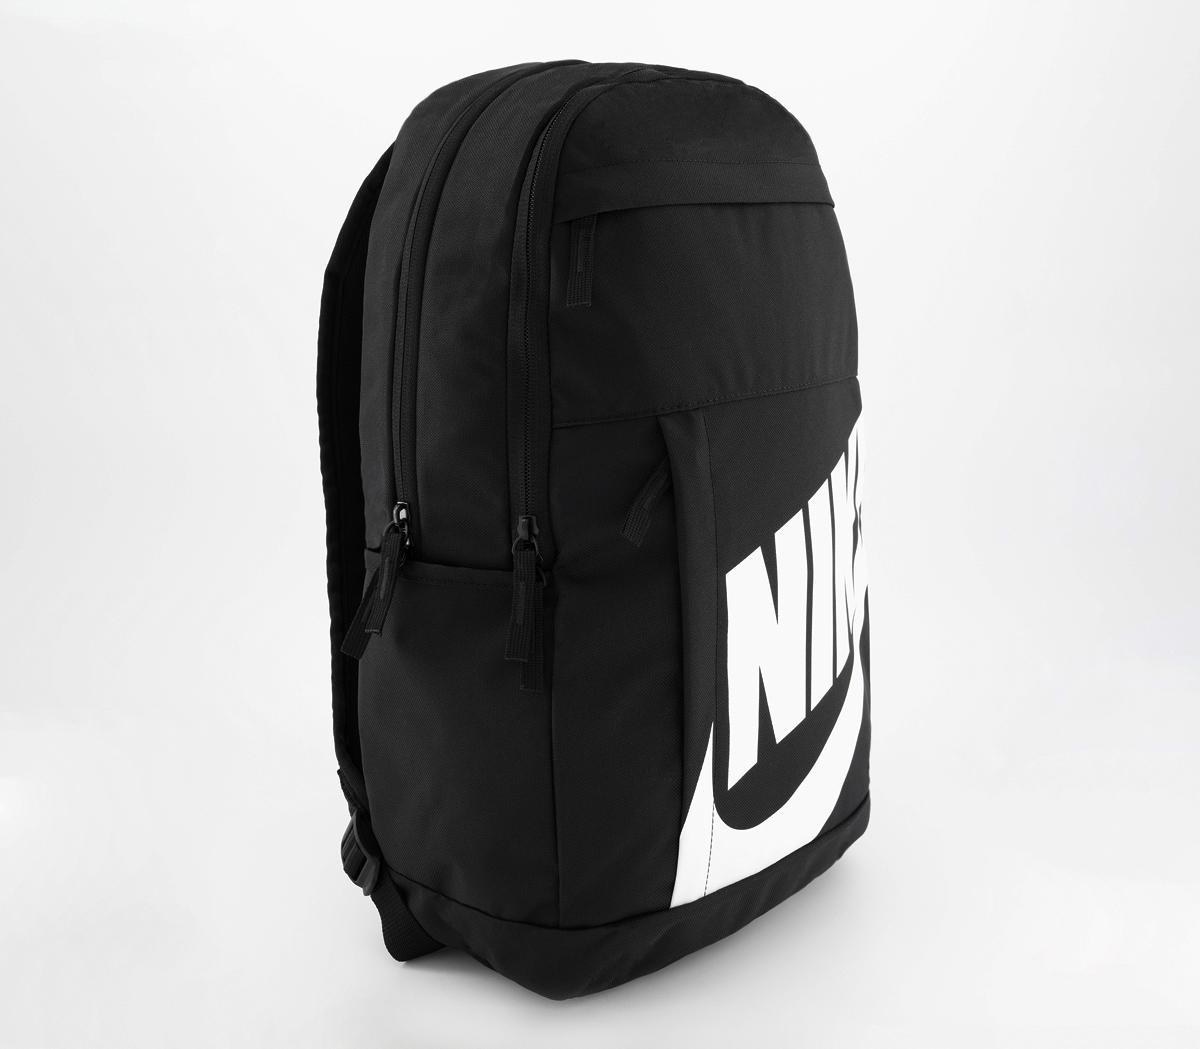 NikeNike Elemental Backpack 2.0Black White